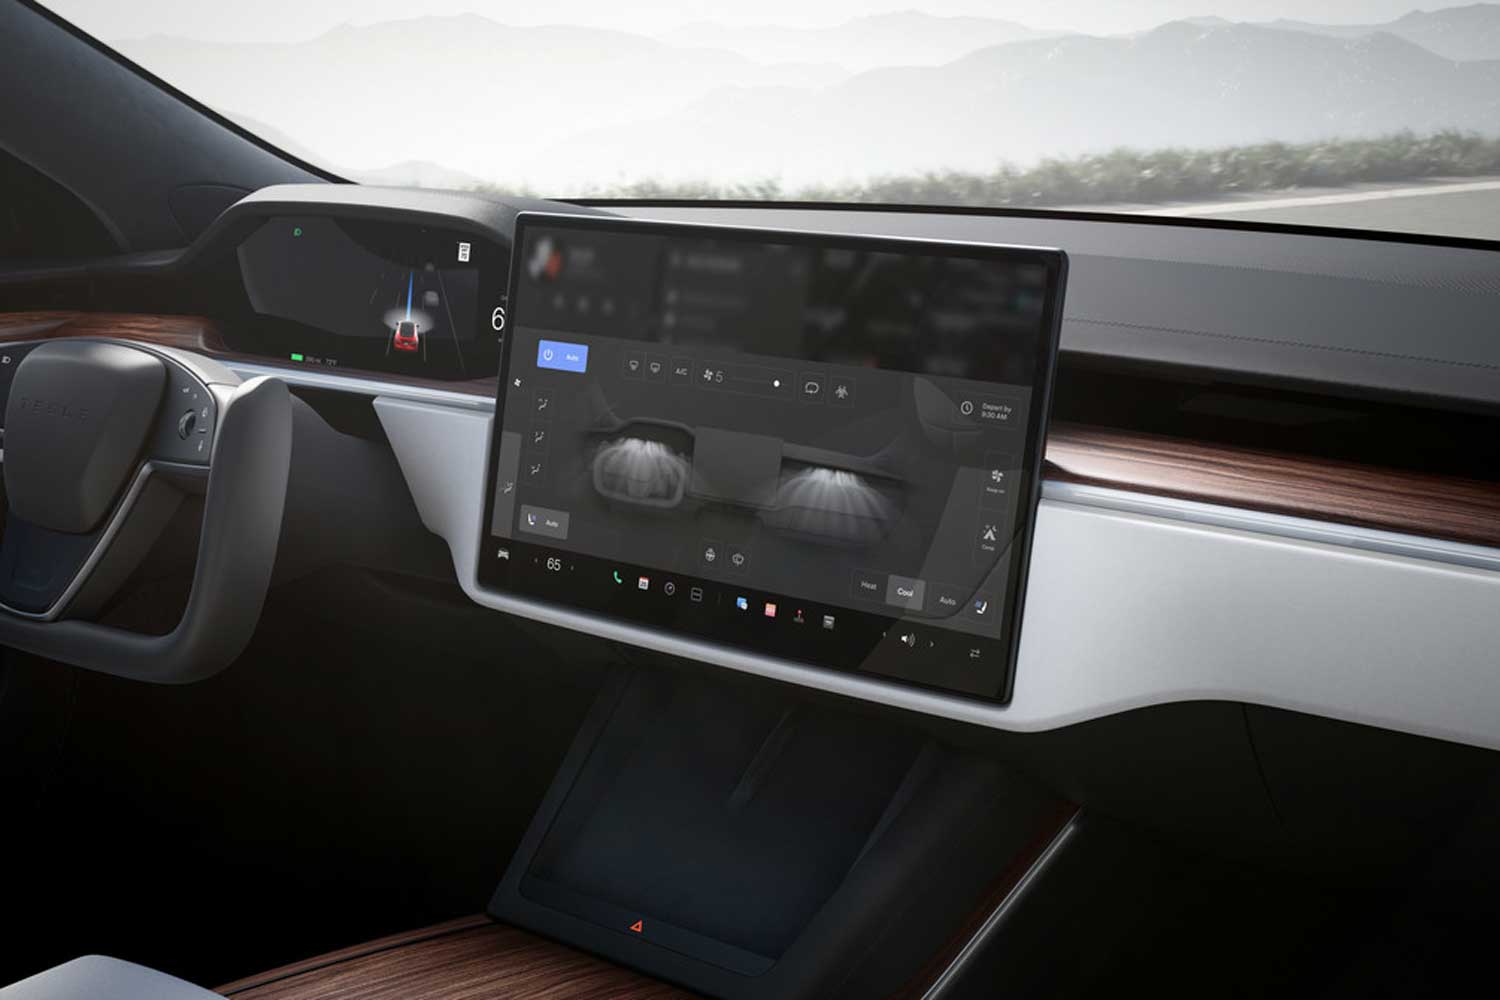 Alt text: 2023 Tesla model S infotainment screen